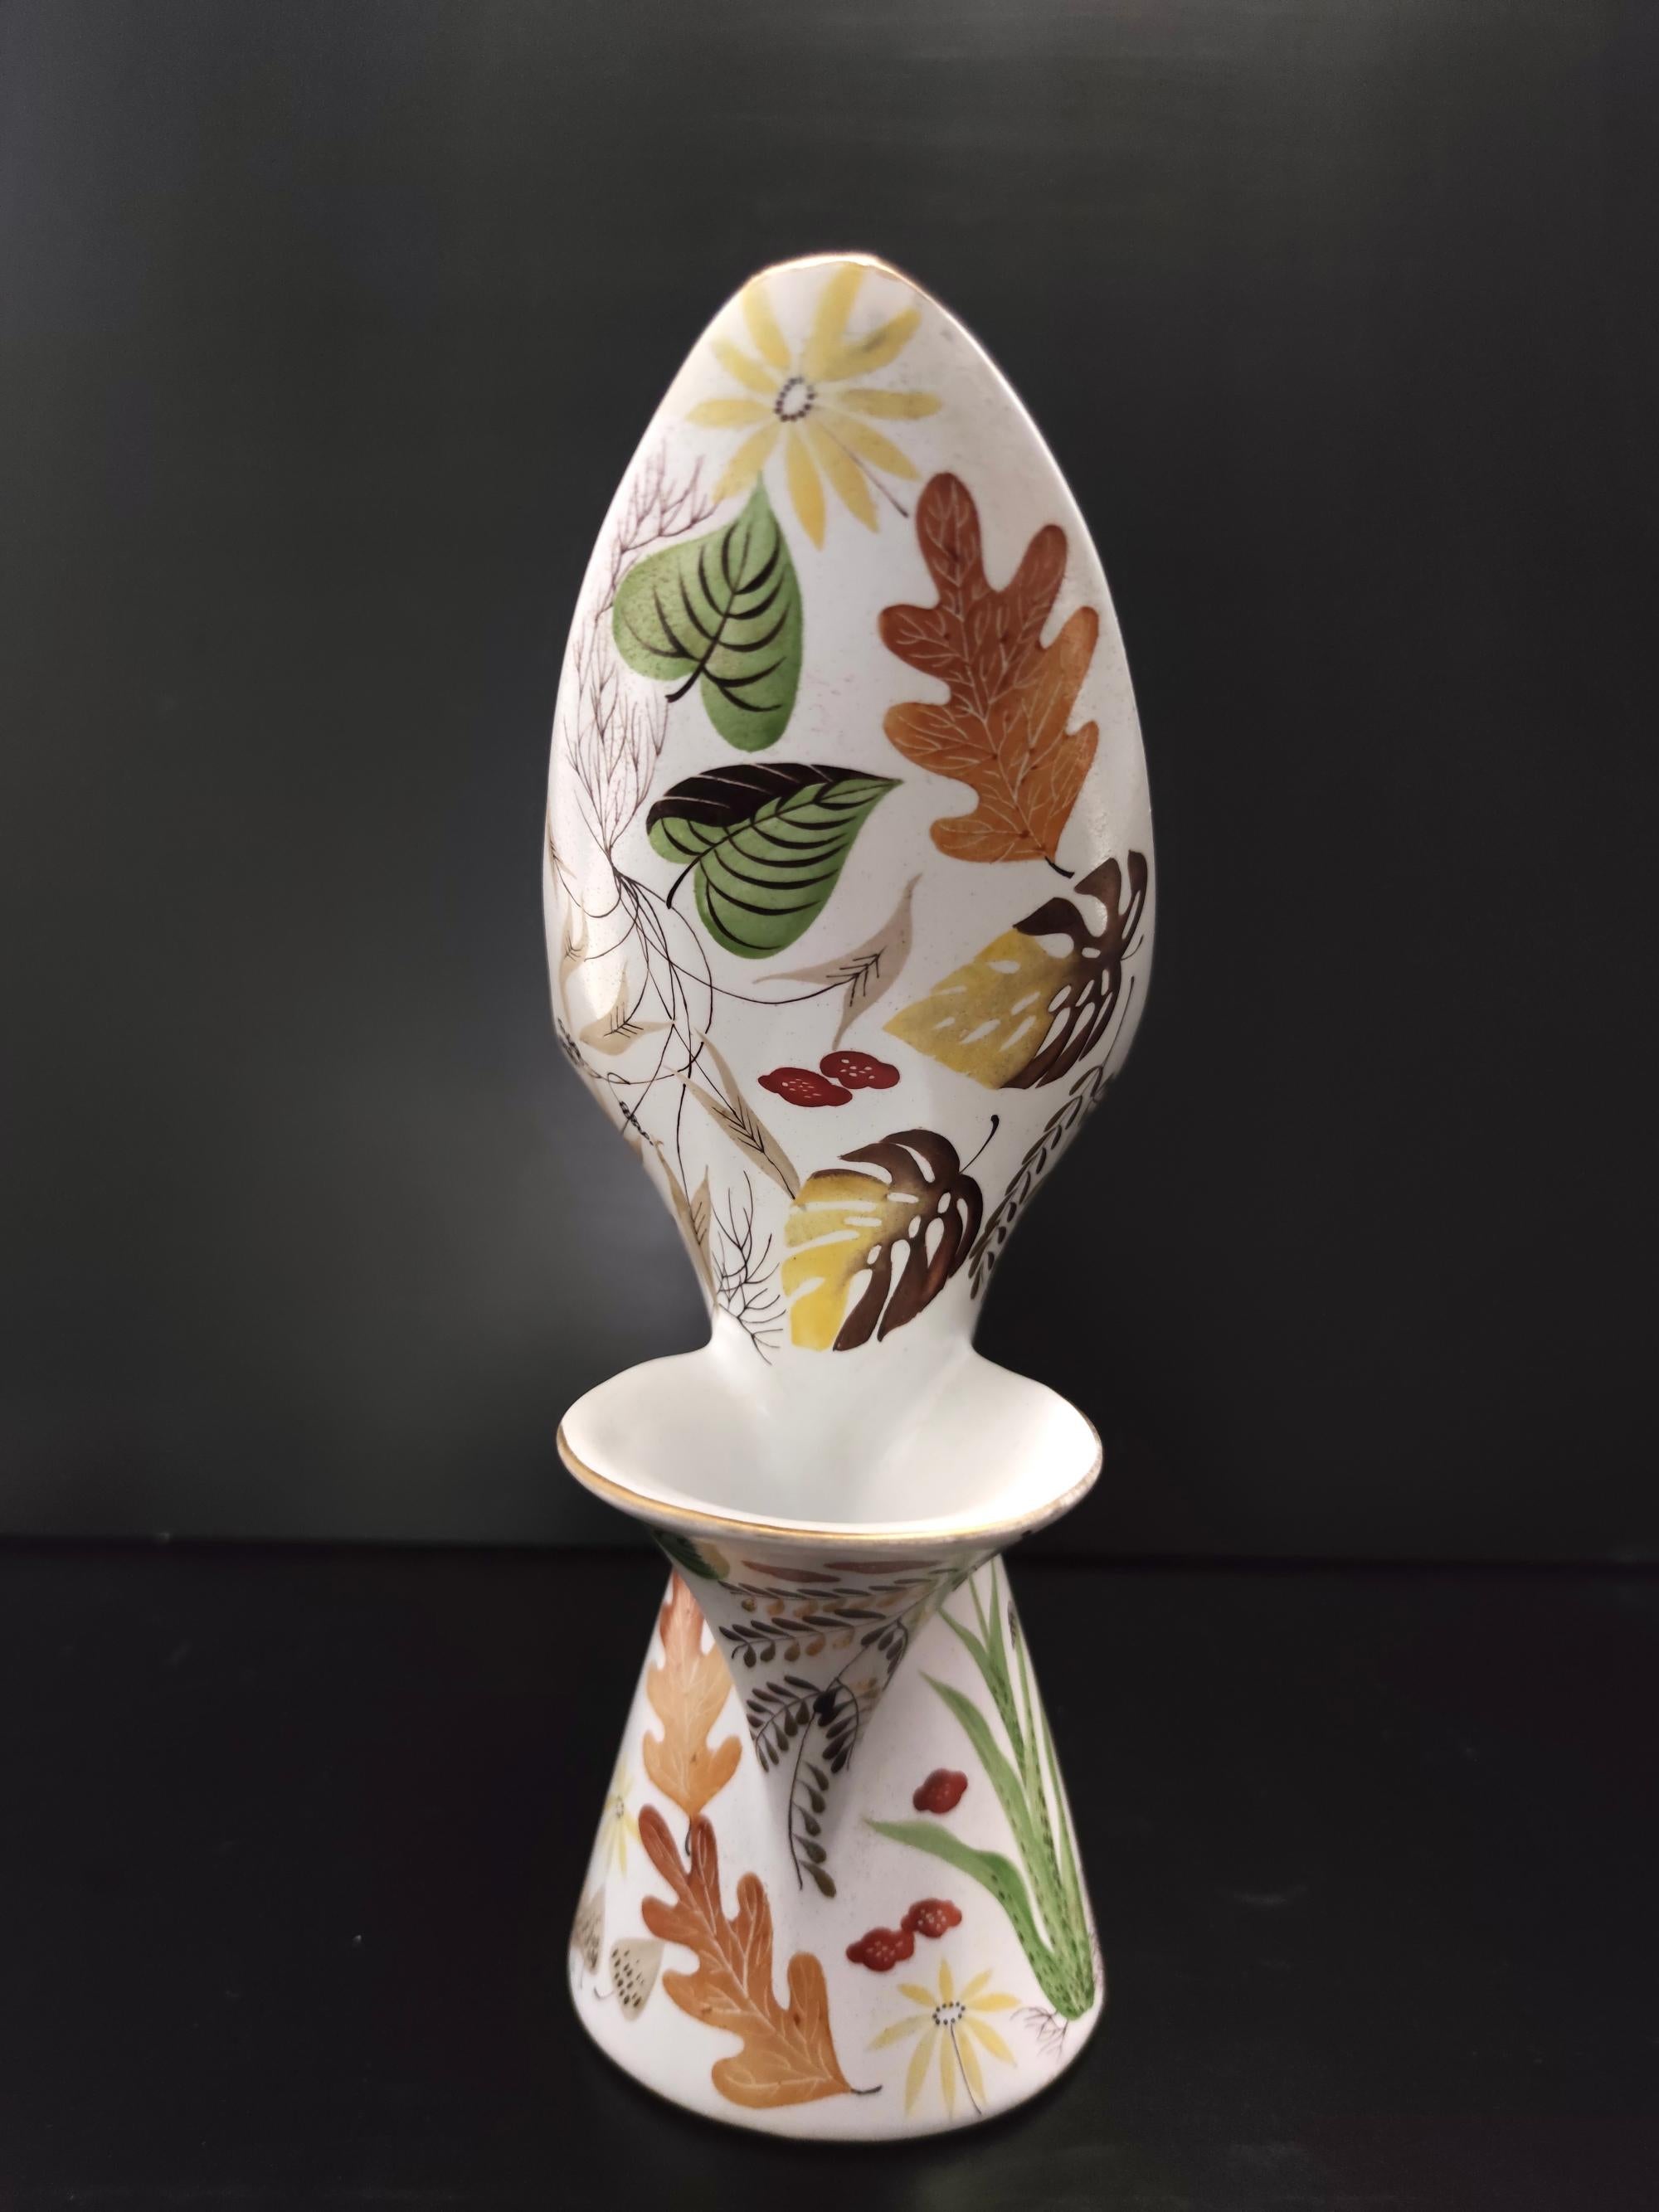 Fabriqué en Italie, années 1957. 
Ce vase étonnant est fabriqué en céramique émaillée blanche, qui a été peinte à la main après...  puis cuits une nouvelle fois au four. 
Il s'agit d'une pièce rare : en effet, elle ne figure pas dans le livre